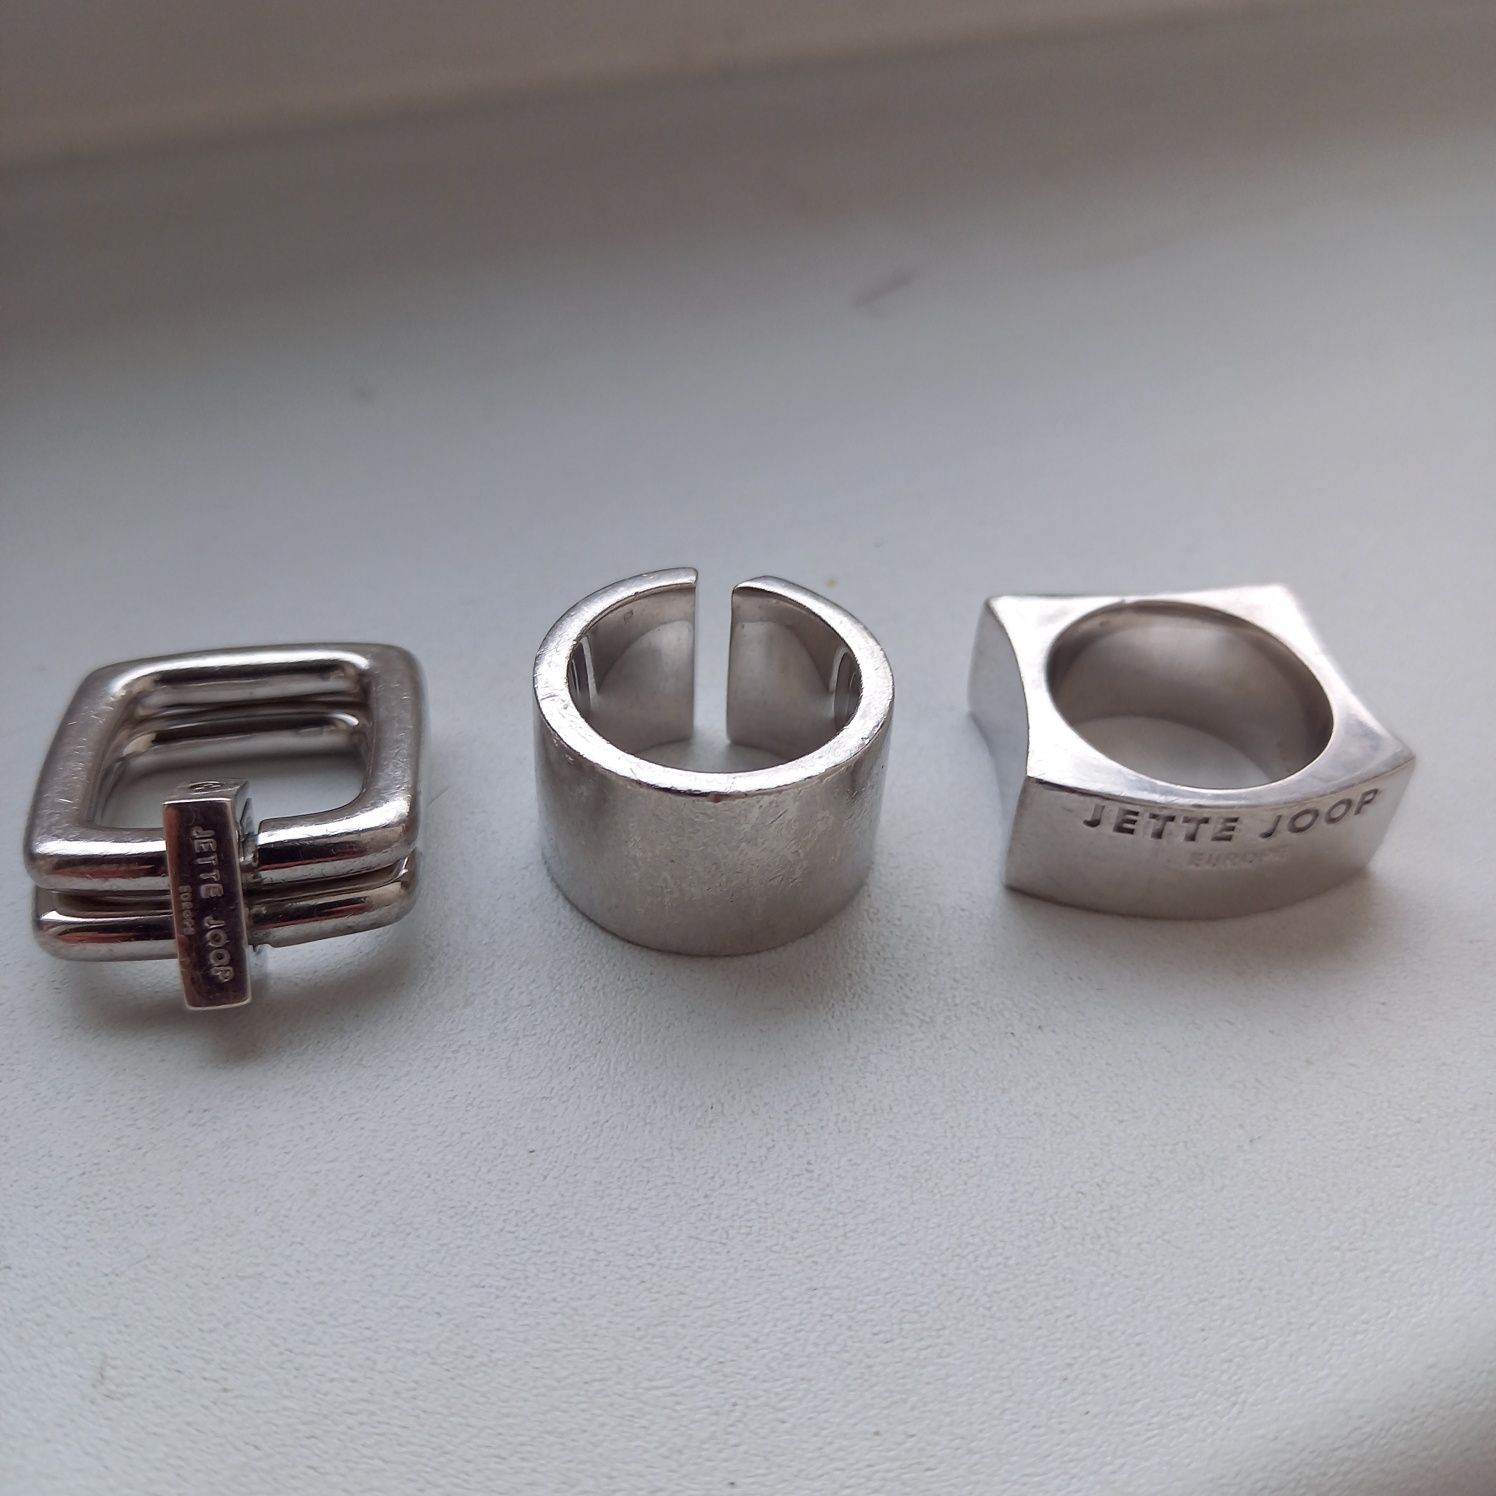 SREBRO, Jette Joop, 3 designerskie, masywne obrączki, pierścionki.